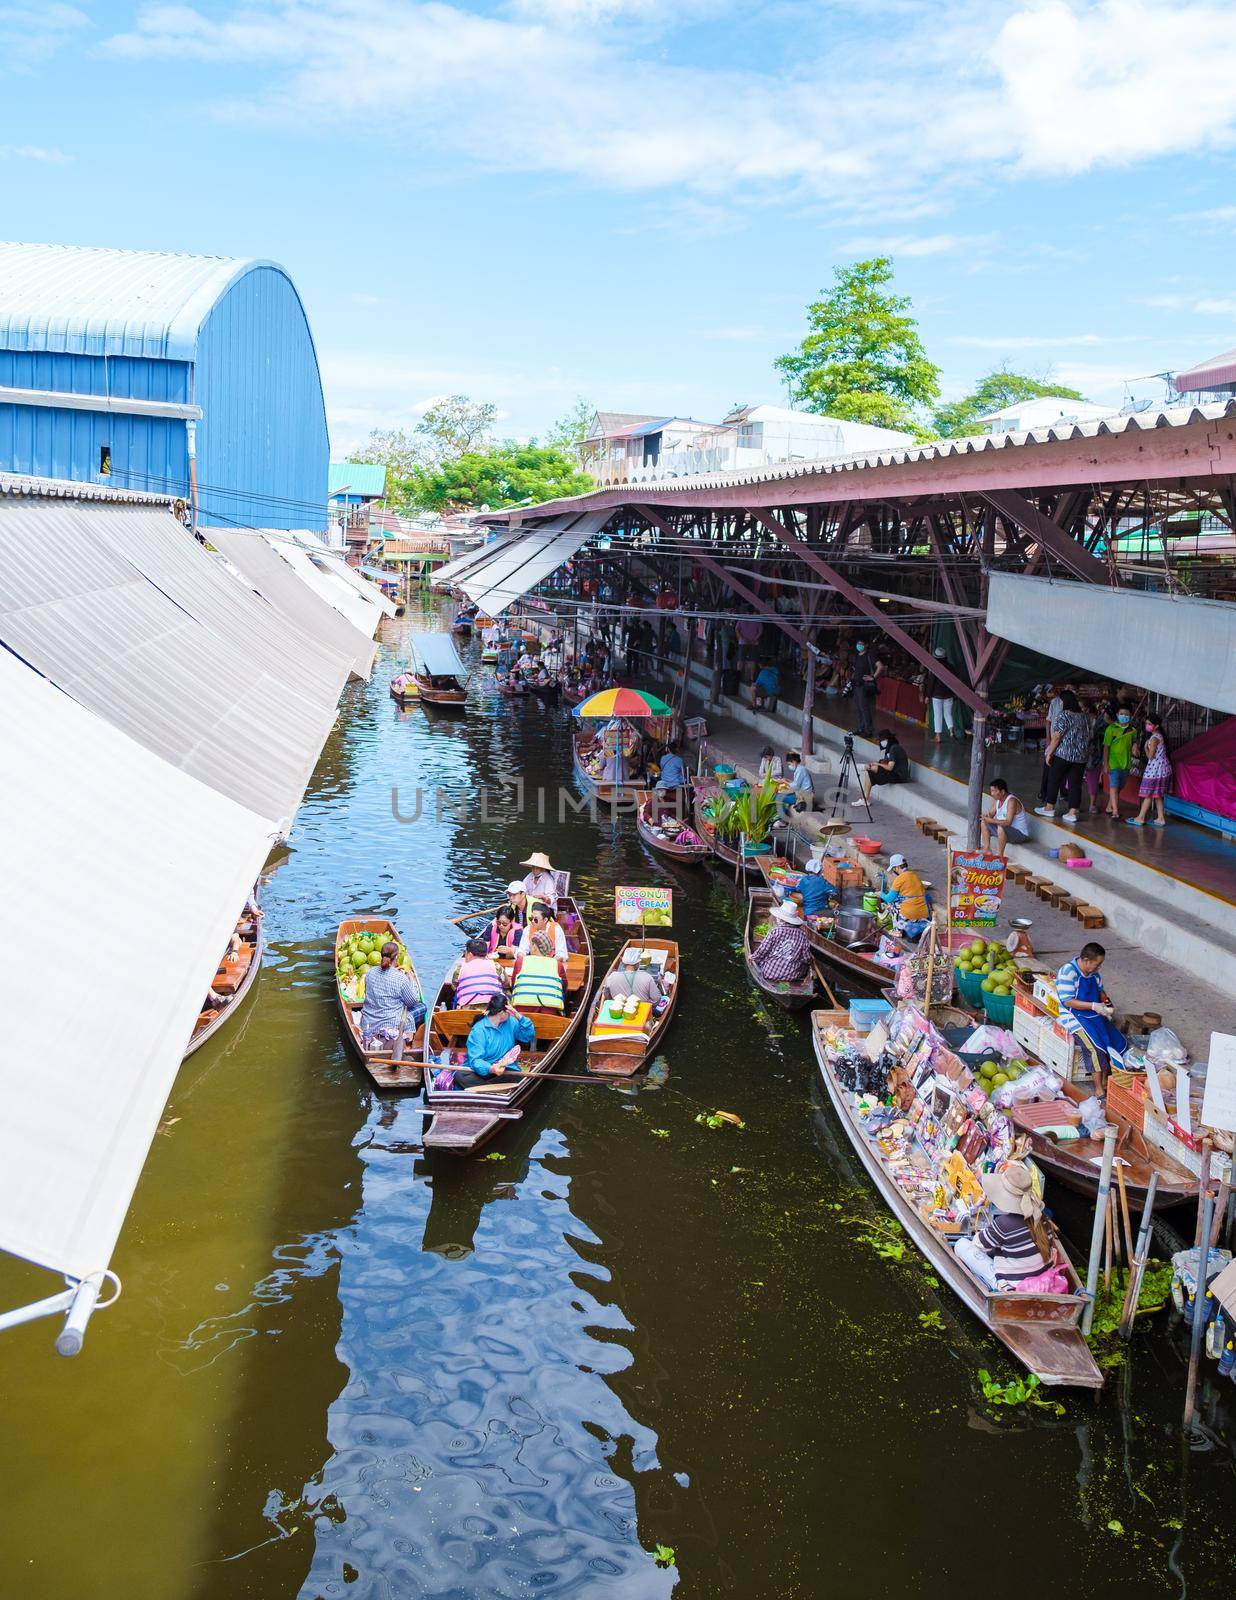 People at Damnoen saduak floating market, Bangkok Thailand by fokkebok